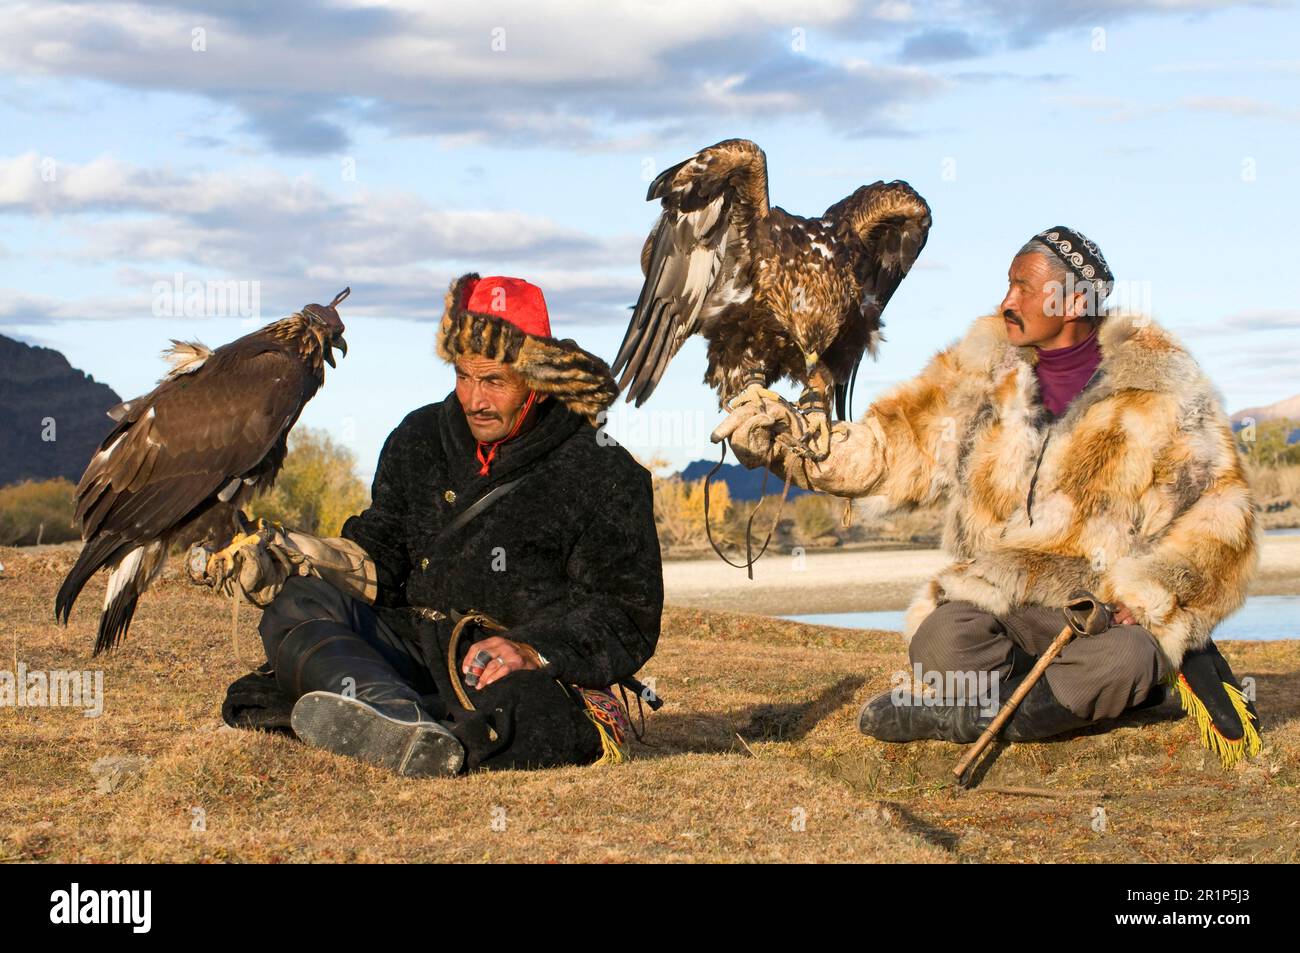 Cazadores kazajos con águilas doradas (Aquila chrysaetos), montañas Altai, Bayan-Ulgii, Mongolia Occidental Foto de stock